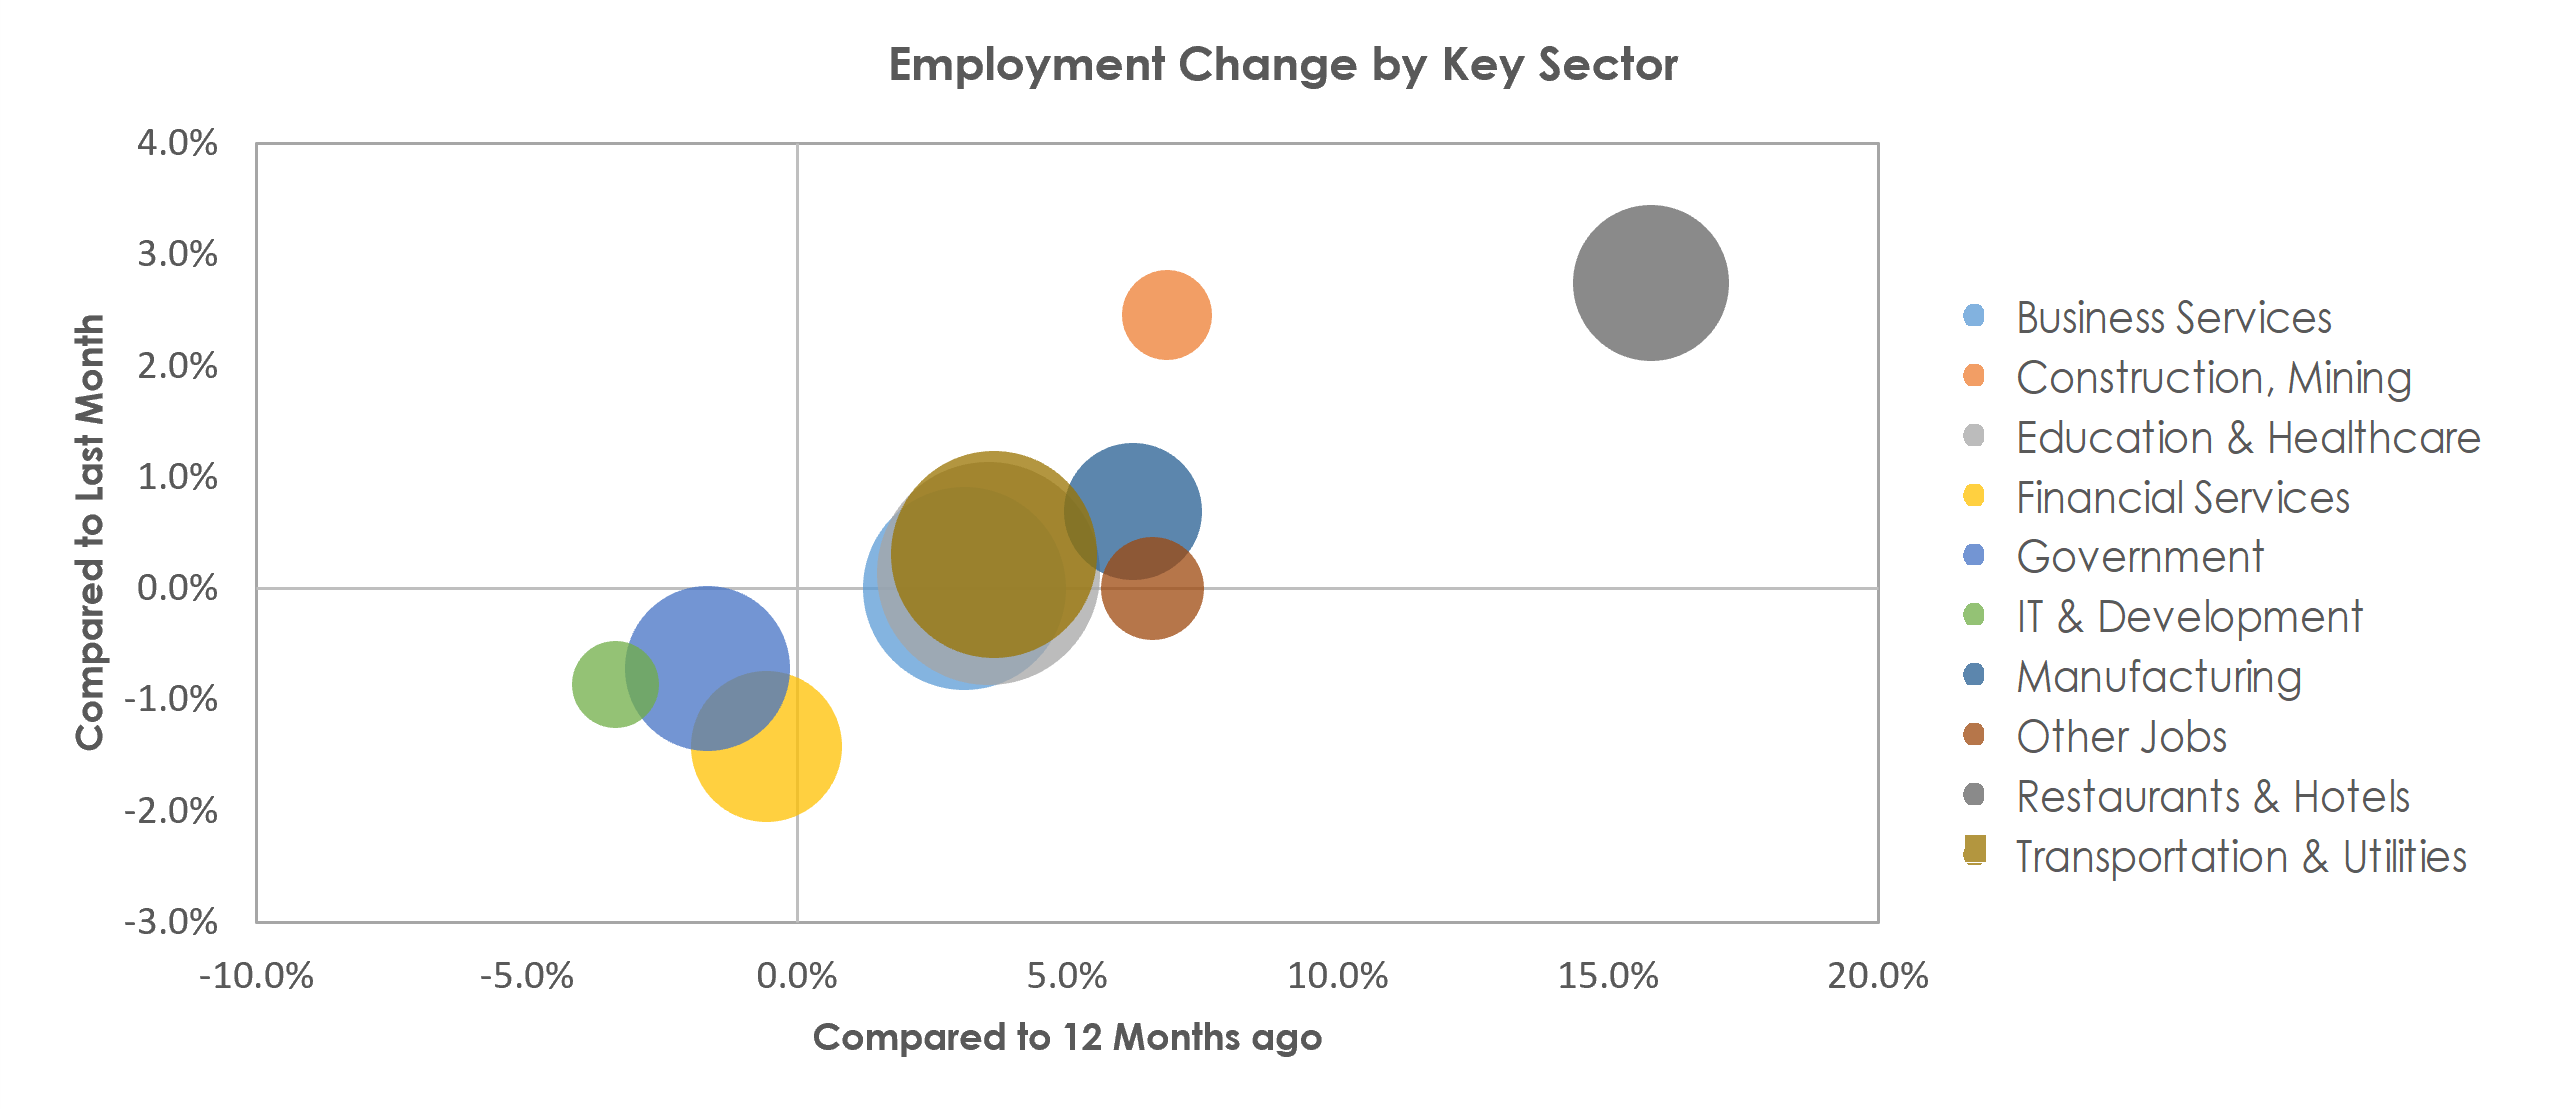 Bridgeport-Stamford-Norwalk, CT Unemployment by Industry March 2022